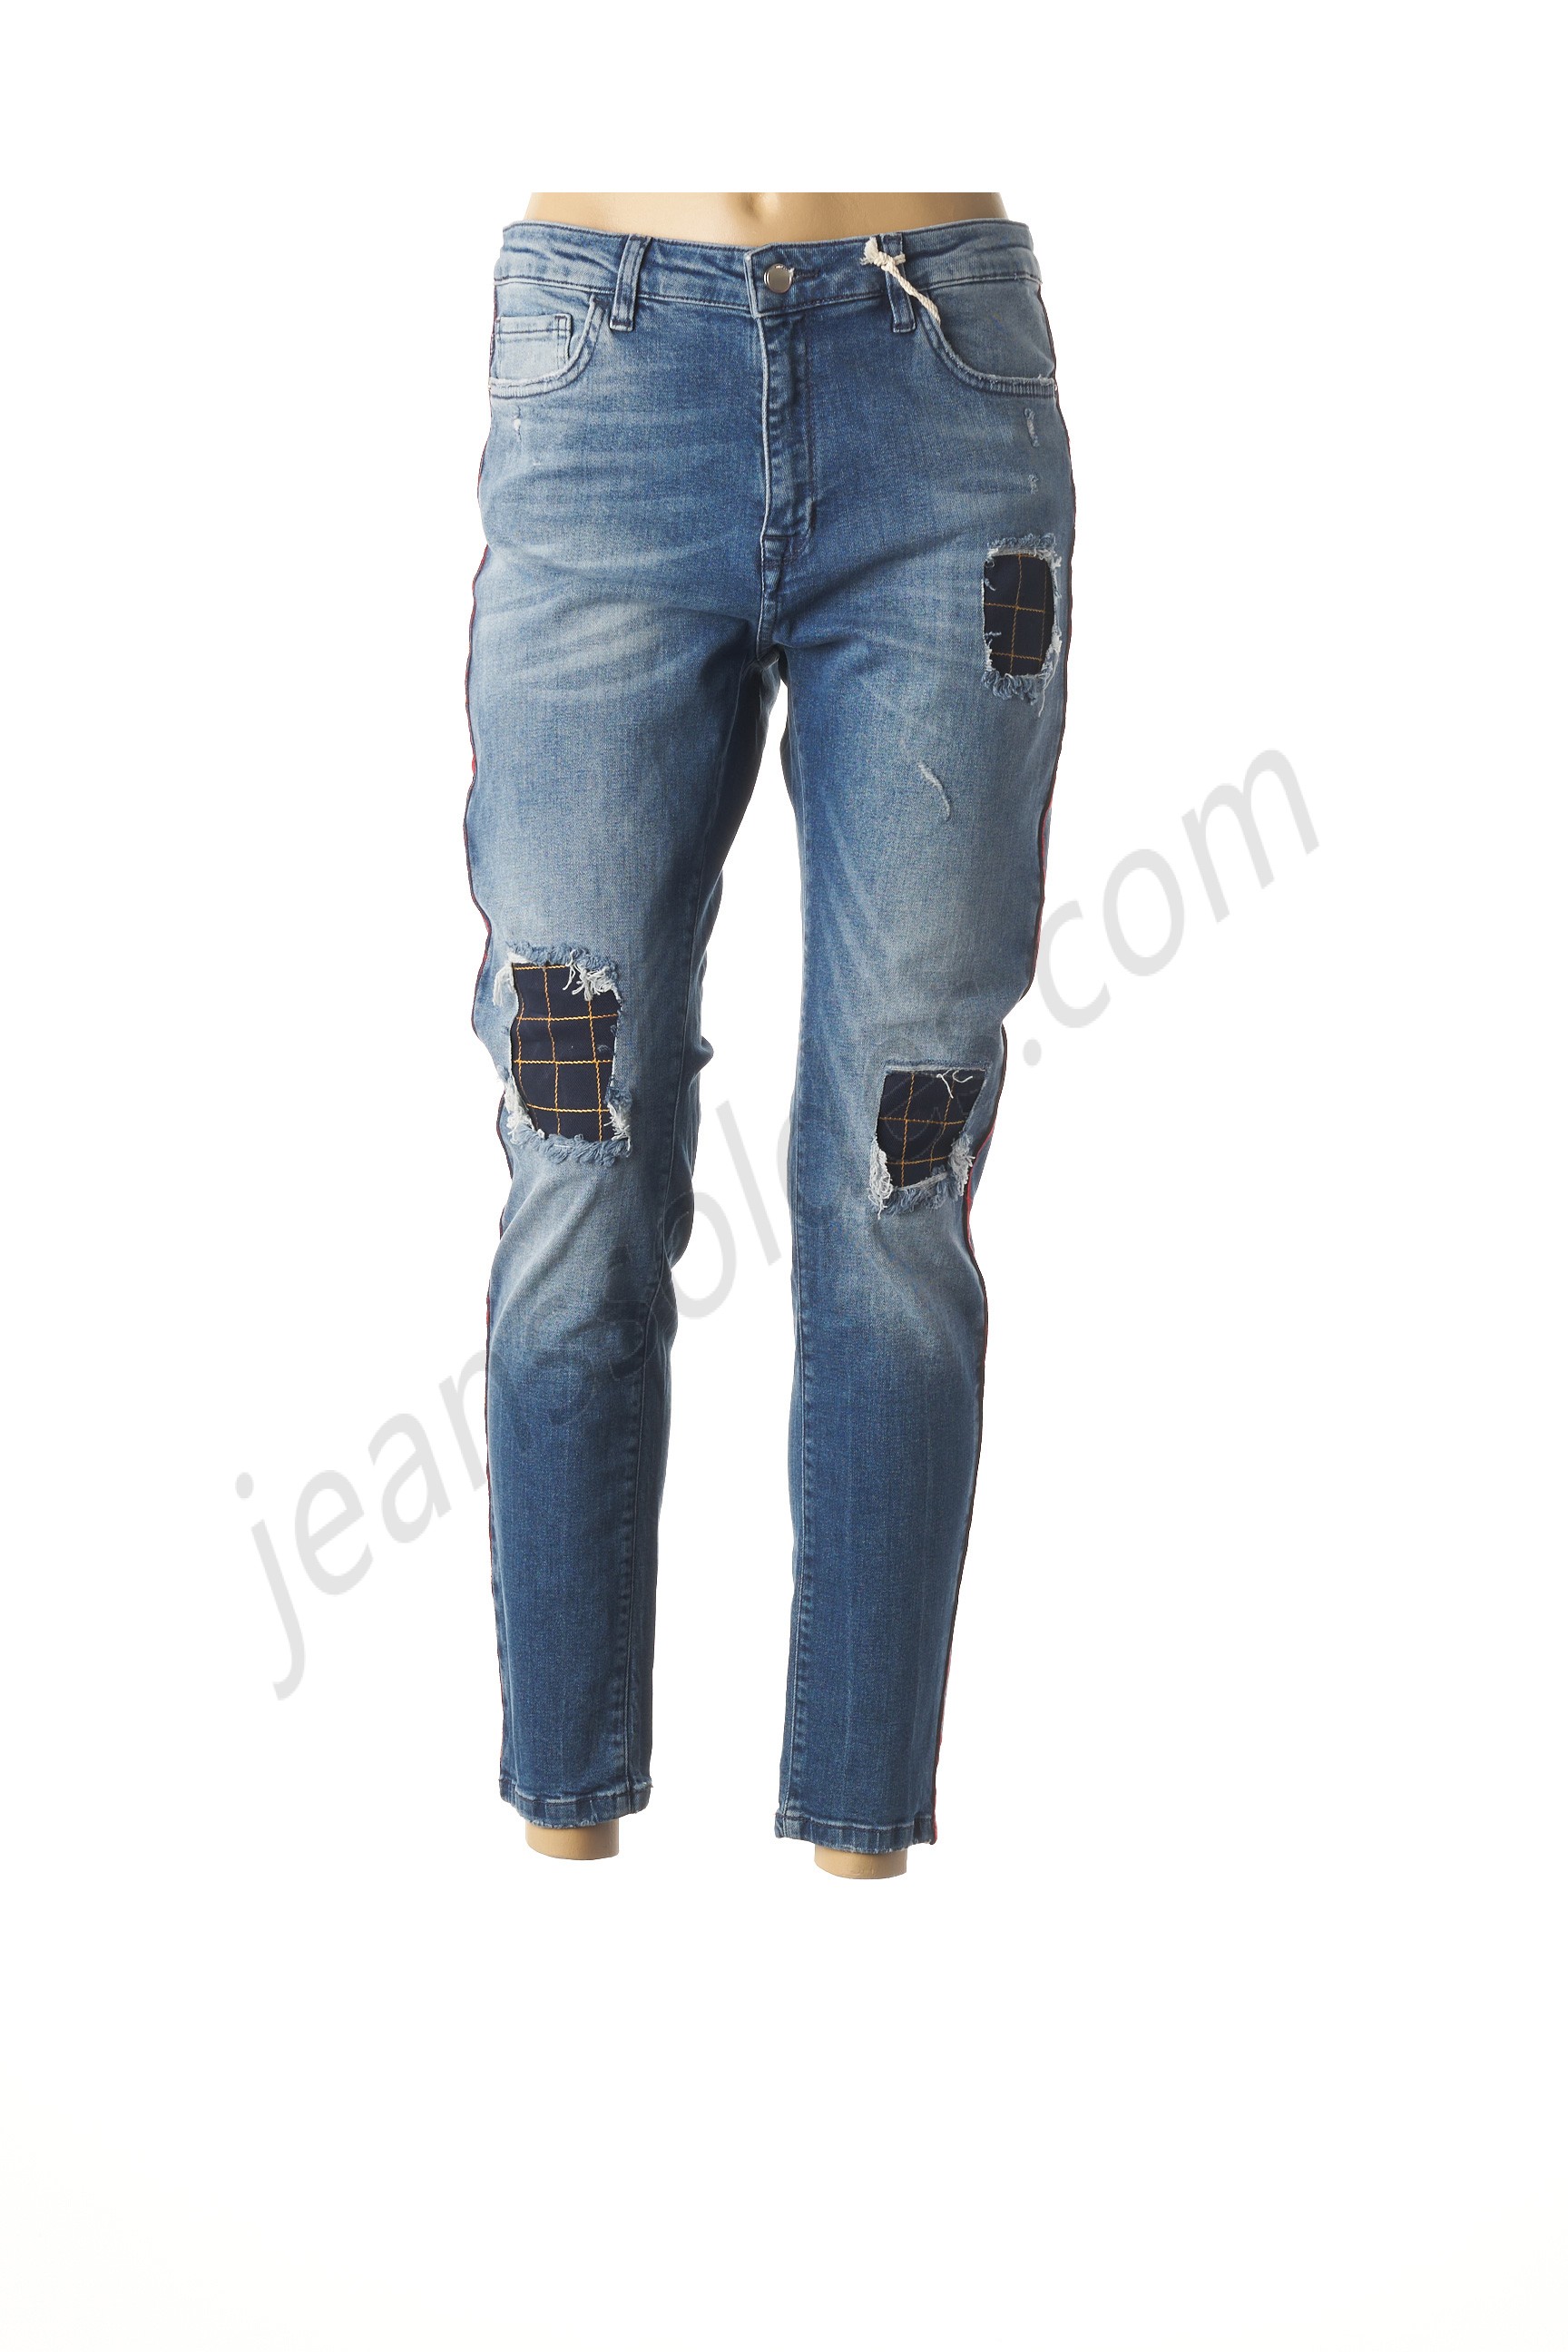 smash wear-Jeans coupe slim prix d’amis - smash wear-Jeans coupe slim prix d’amis